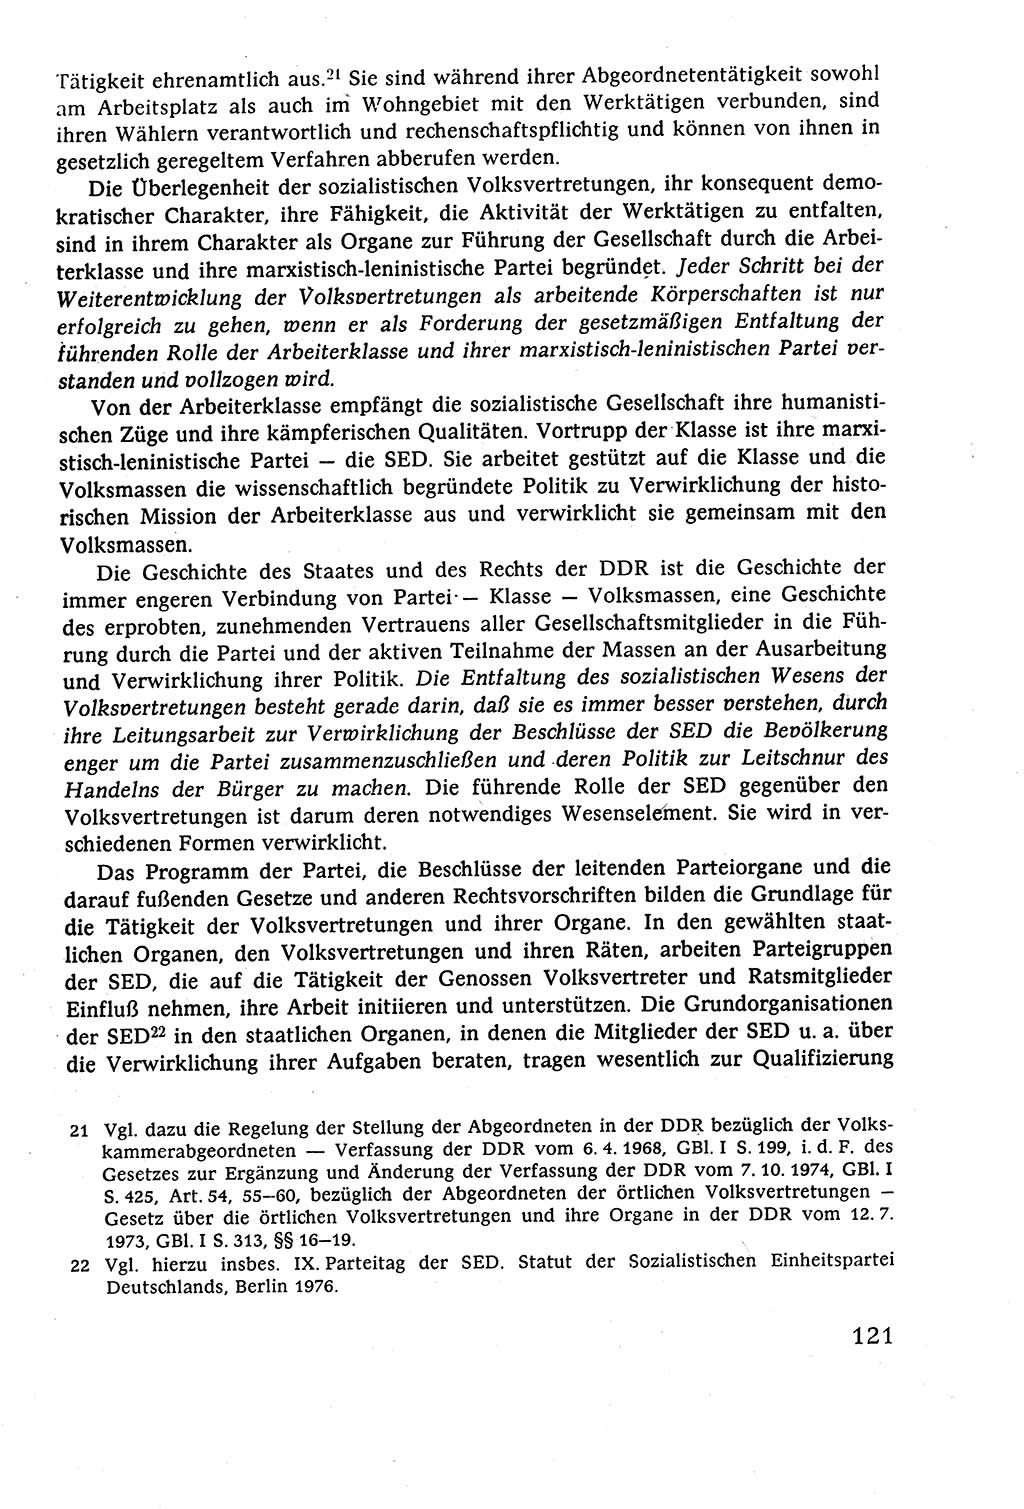 Staatsrecht der DDR (Deutsche Demokratische Republik), Lehrbuch 1977, Seite 121 (St.-R. DDR Lb. 1977, S. 121)